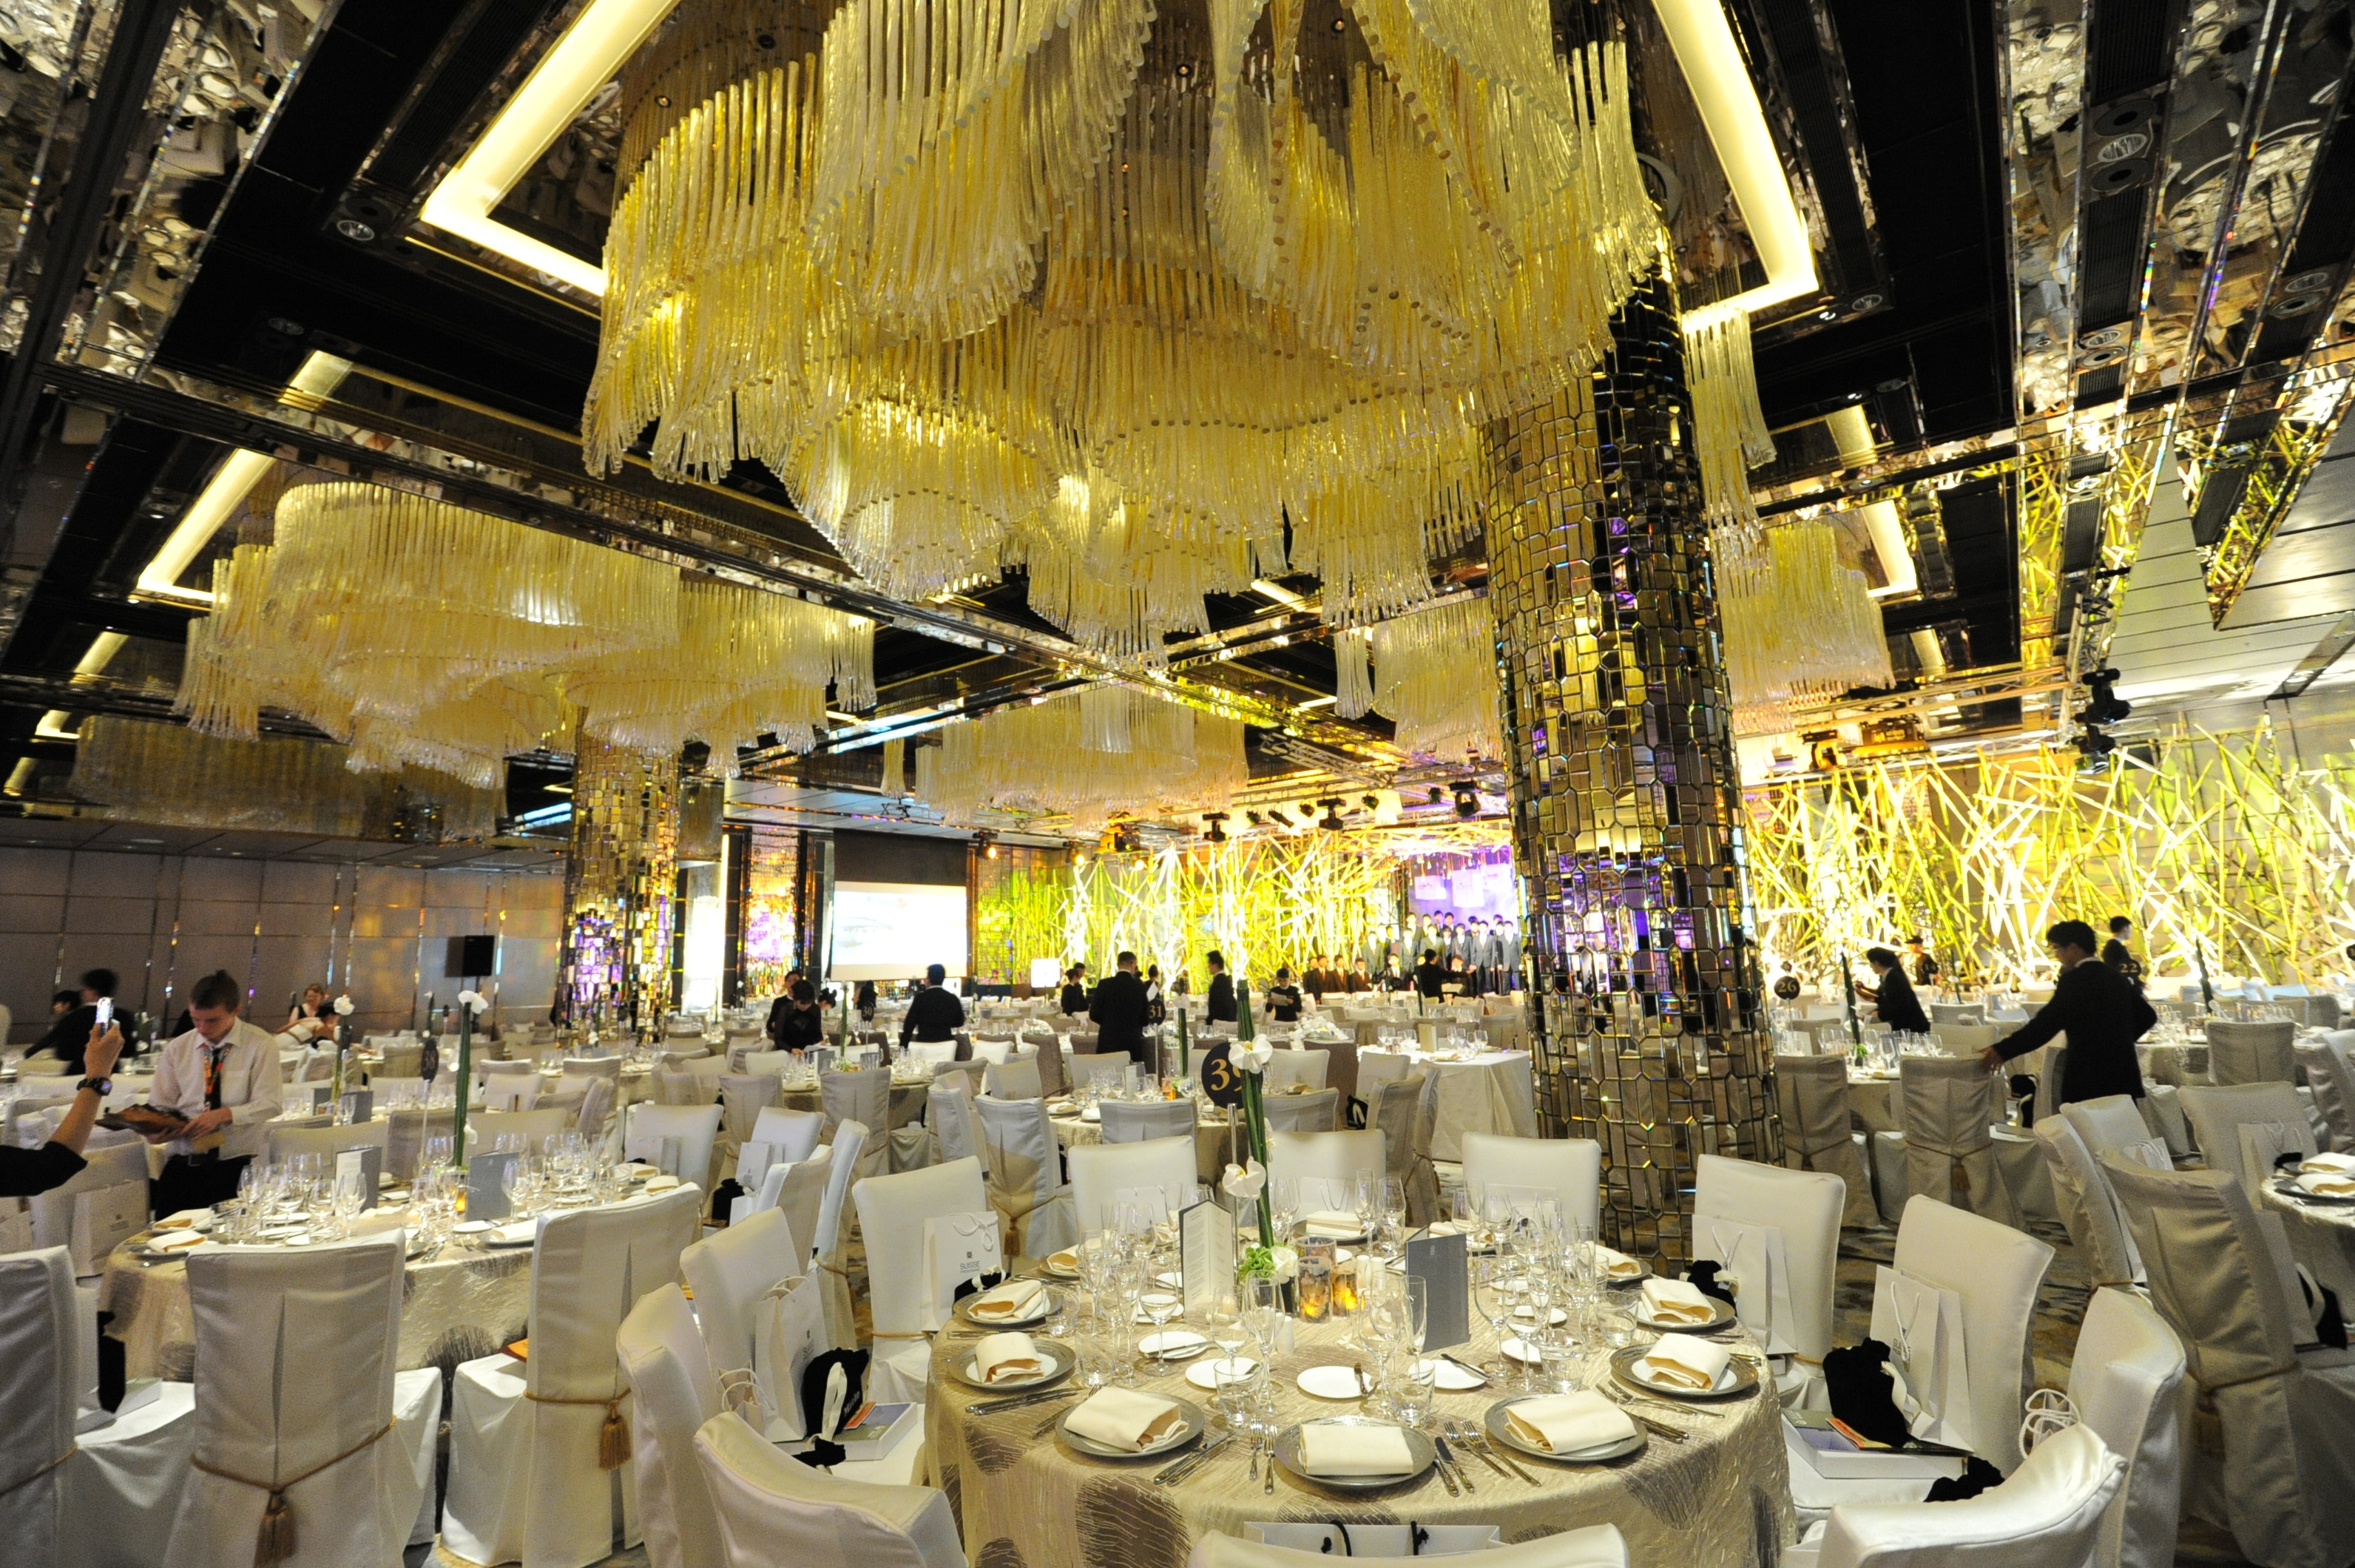 The grand Ritz-Carlton ballroom